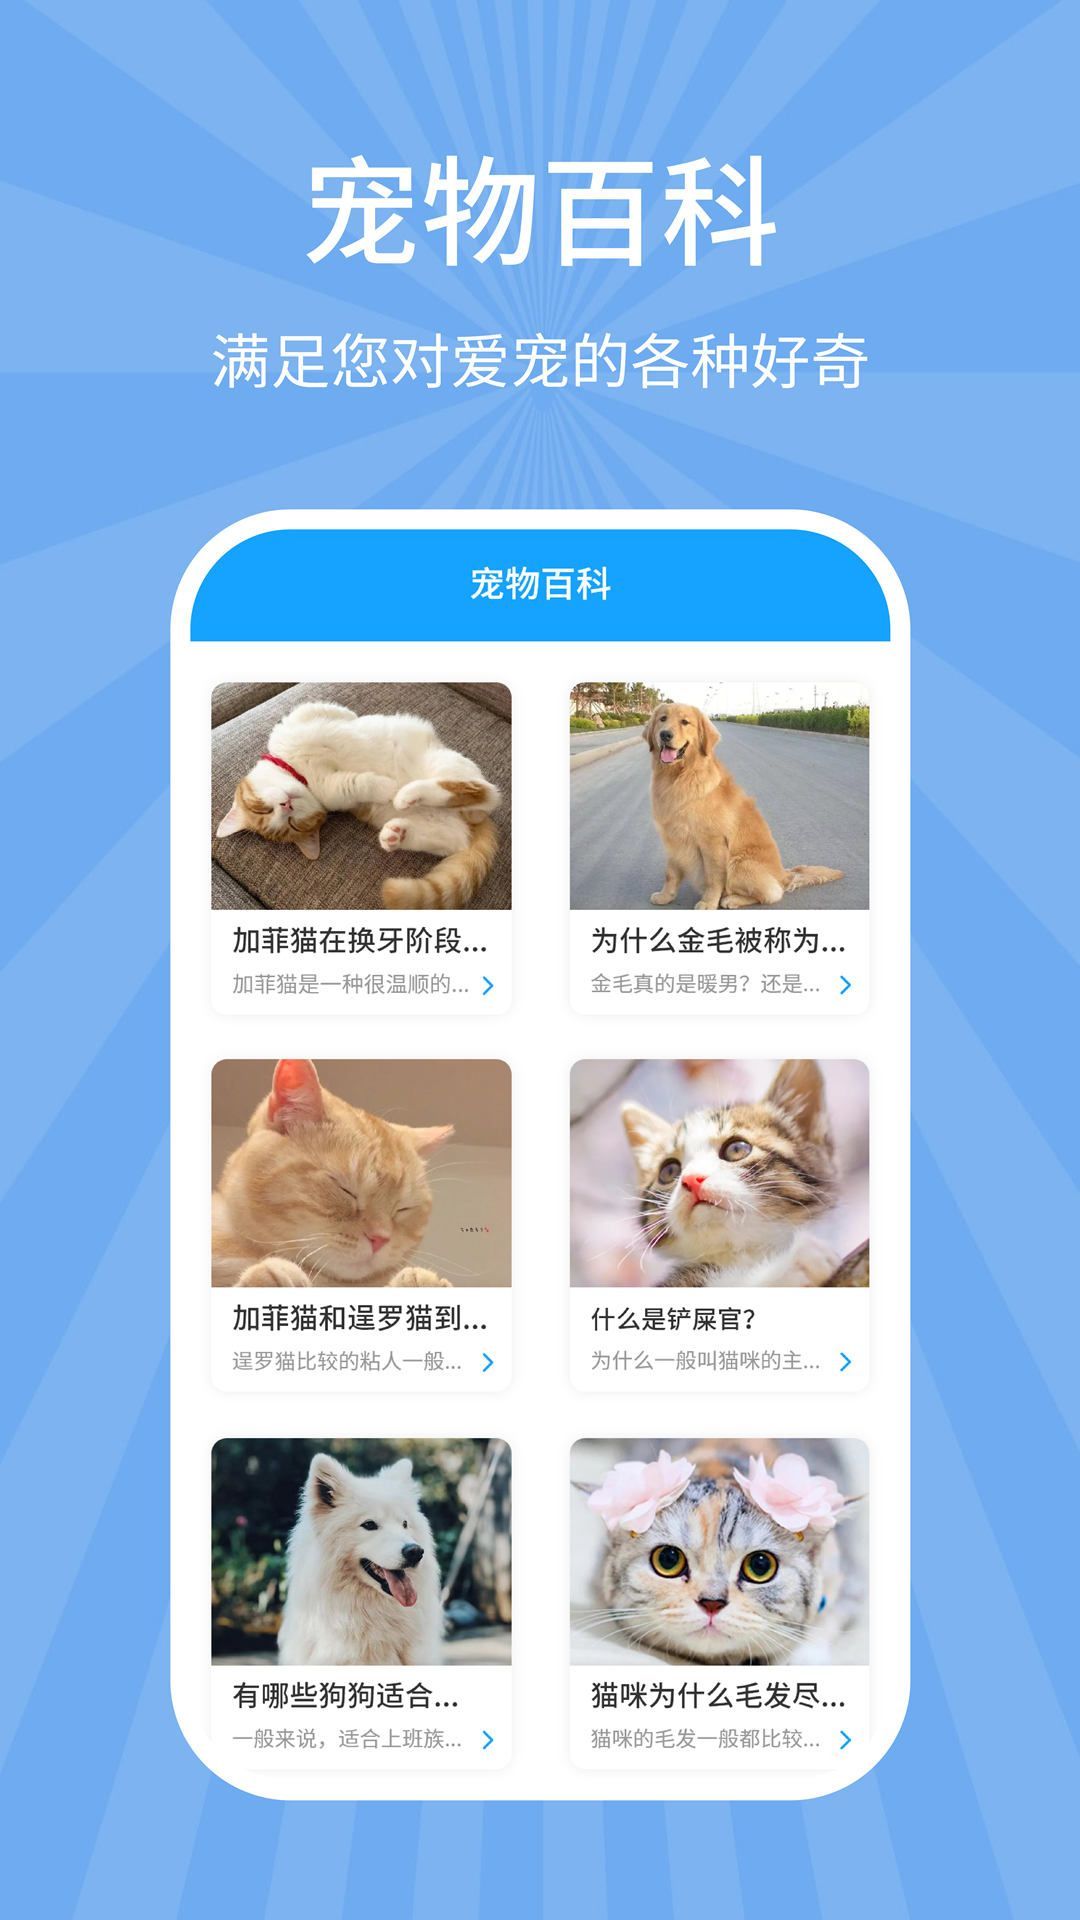 猫狗翻译器免费翻译版